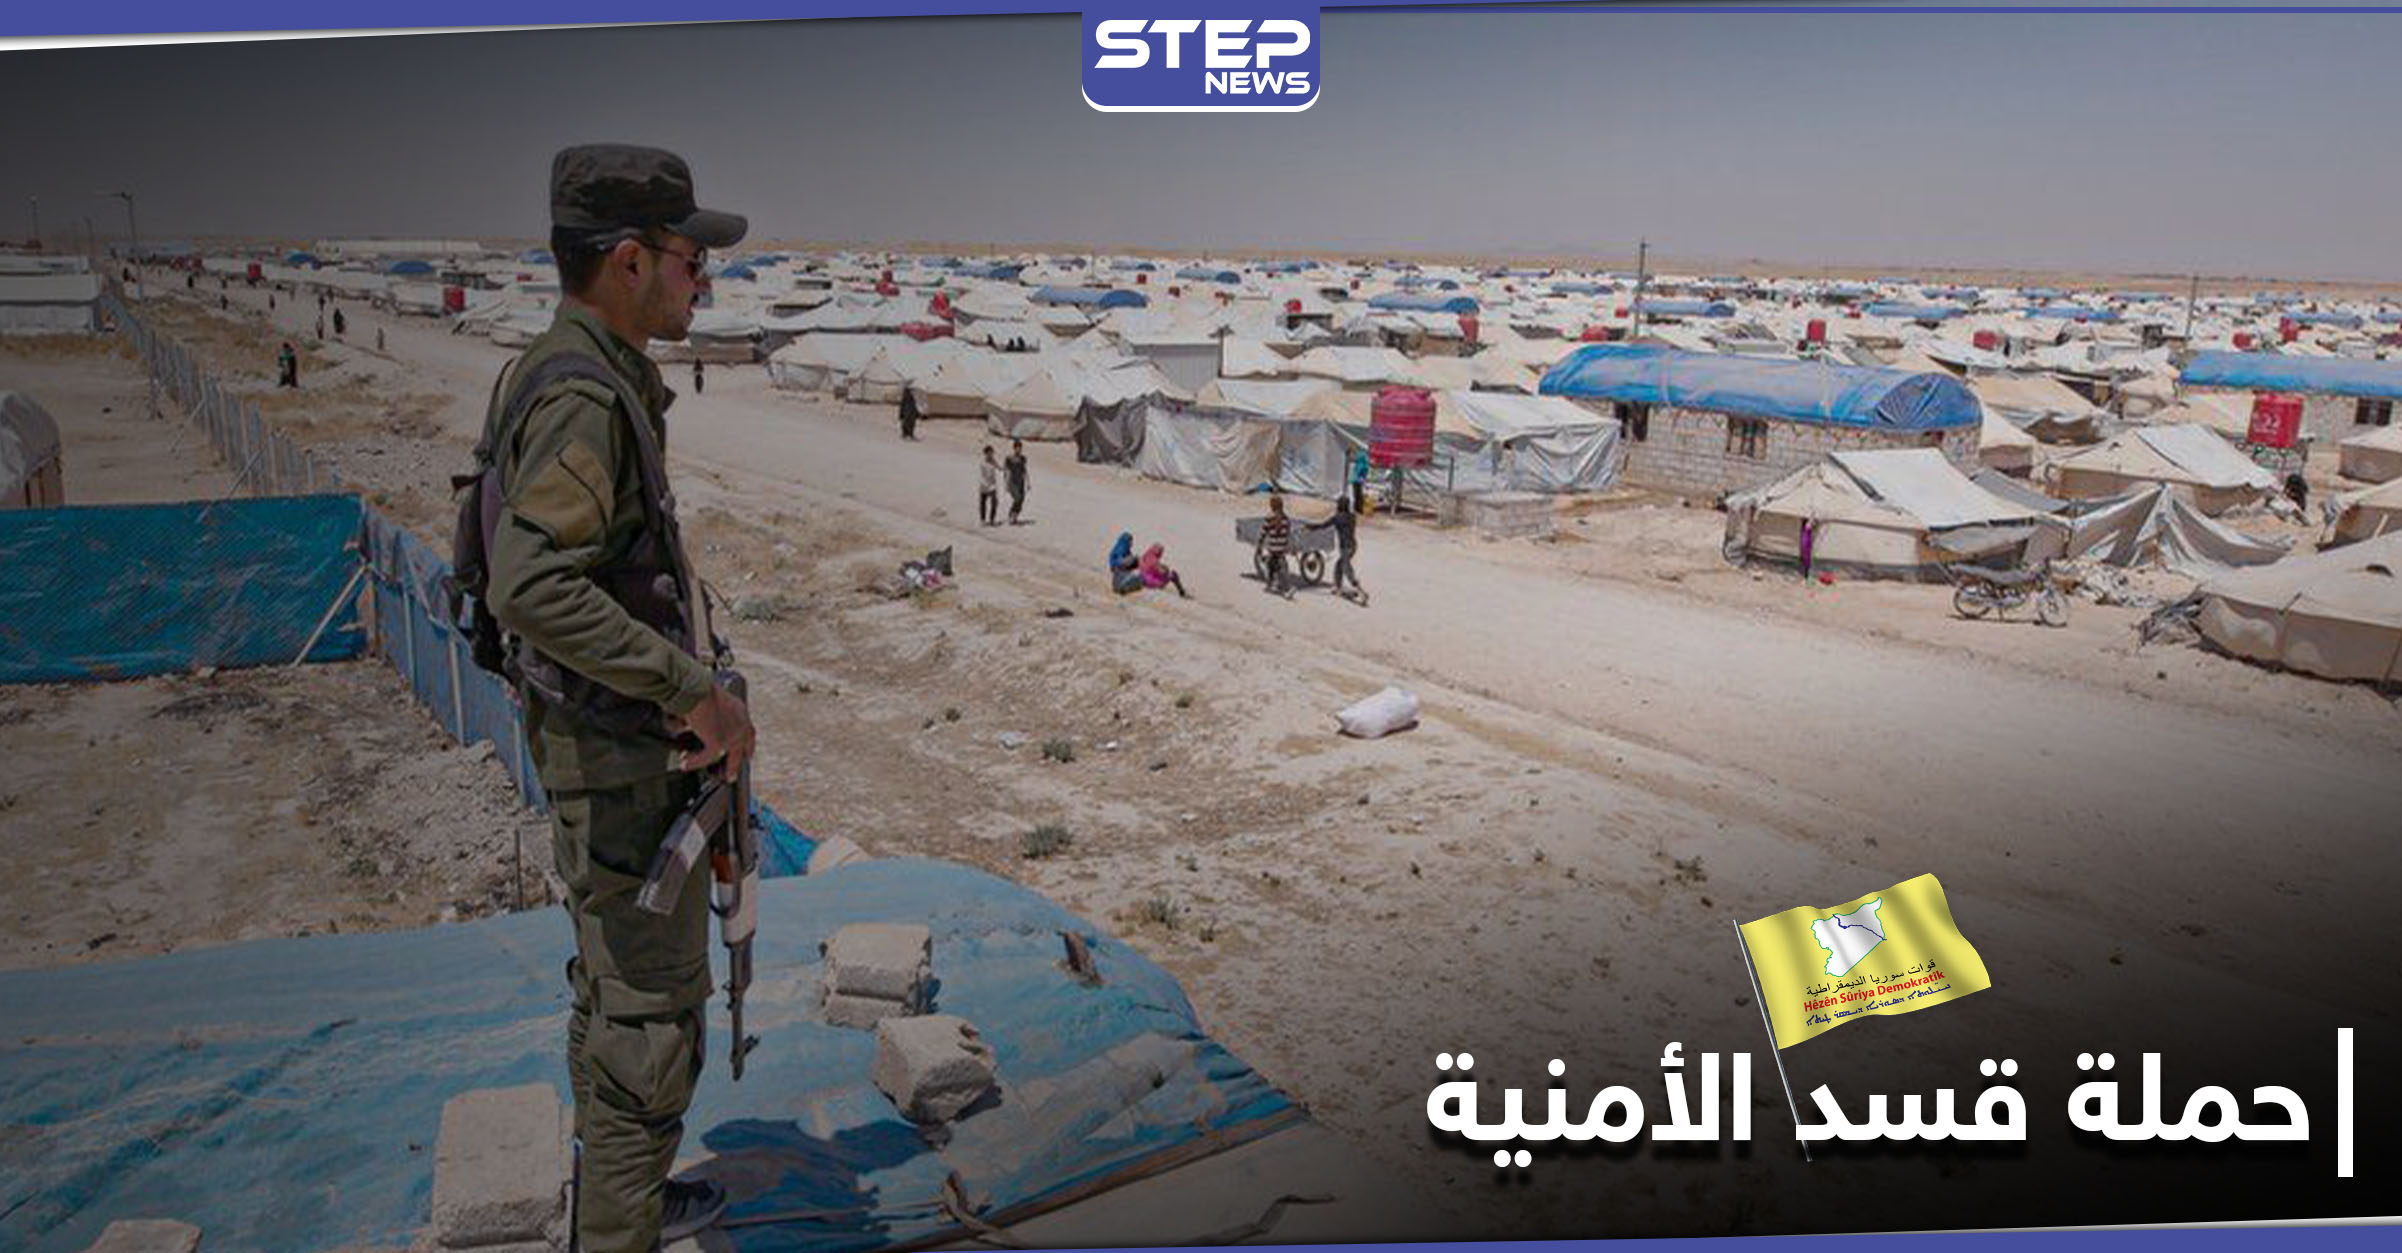  اعتقال أمراء تنظيم داعش والعثور على نفق اختباء وقنابل في مخيم الهول